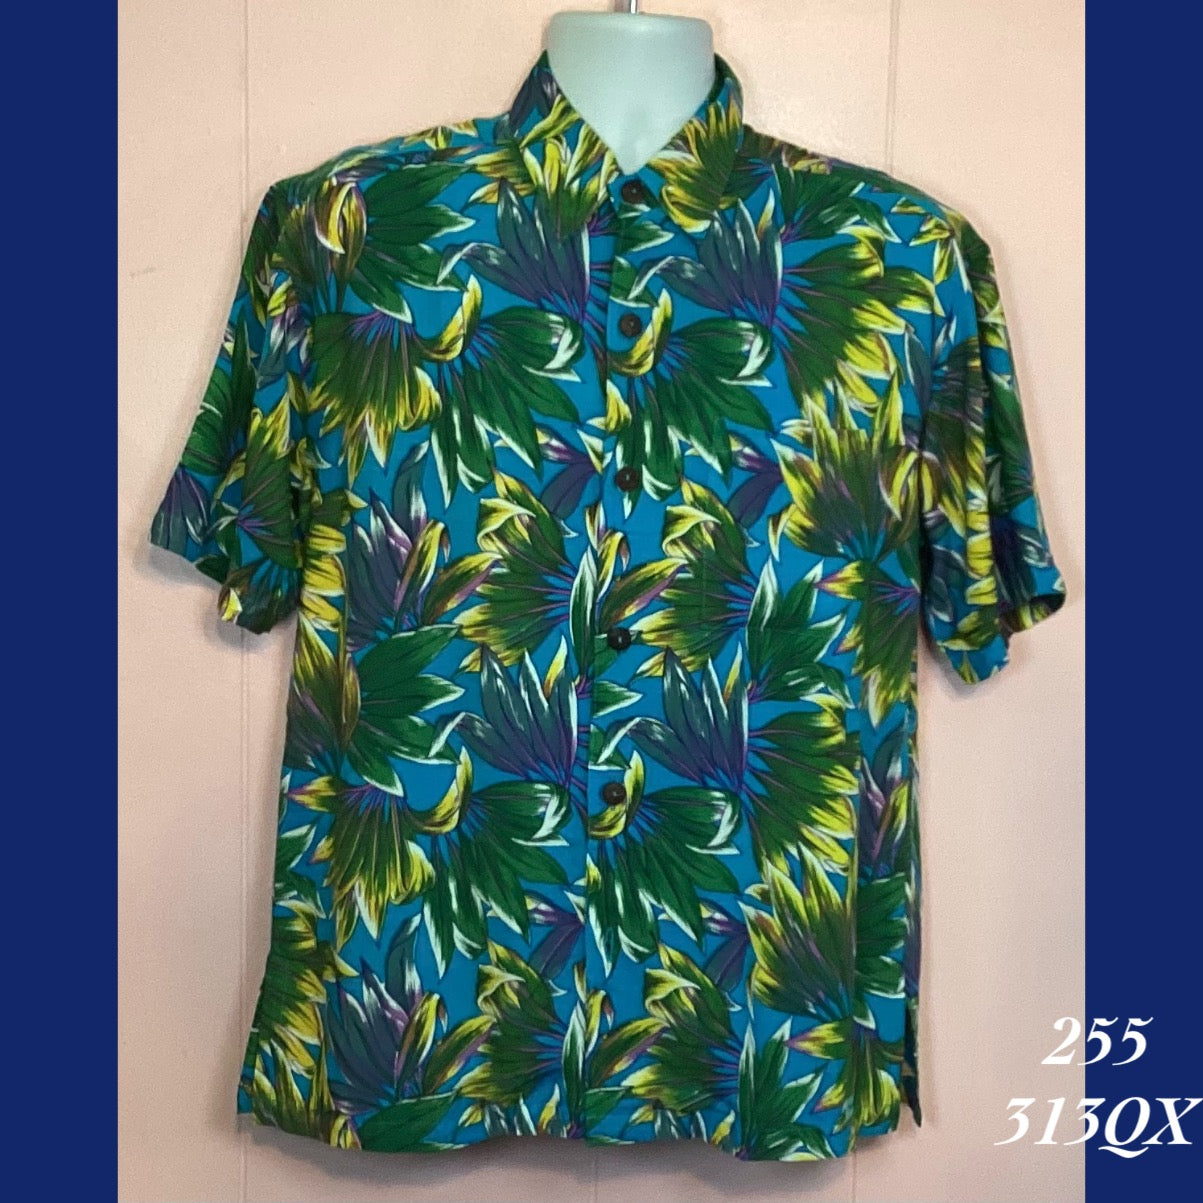 255 - 313QX , Men's Aloha Shirt